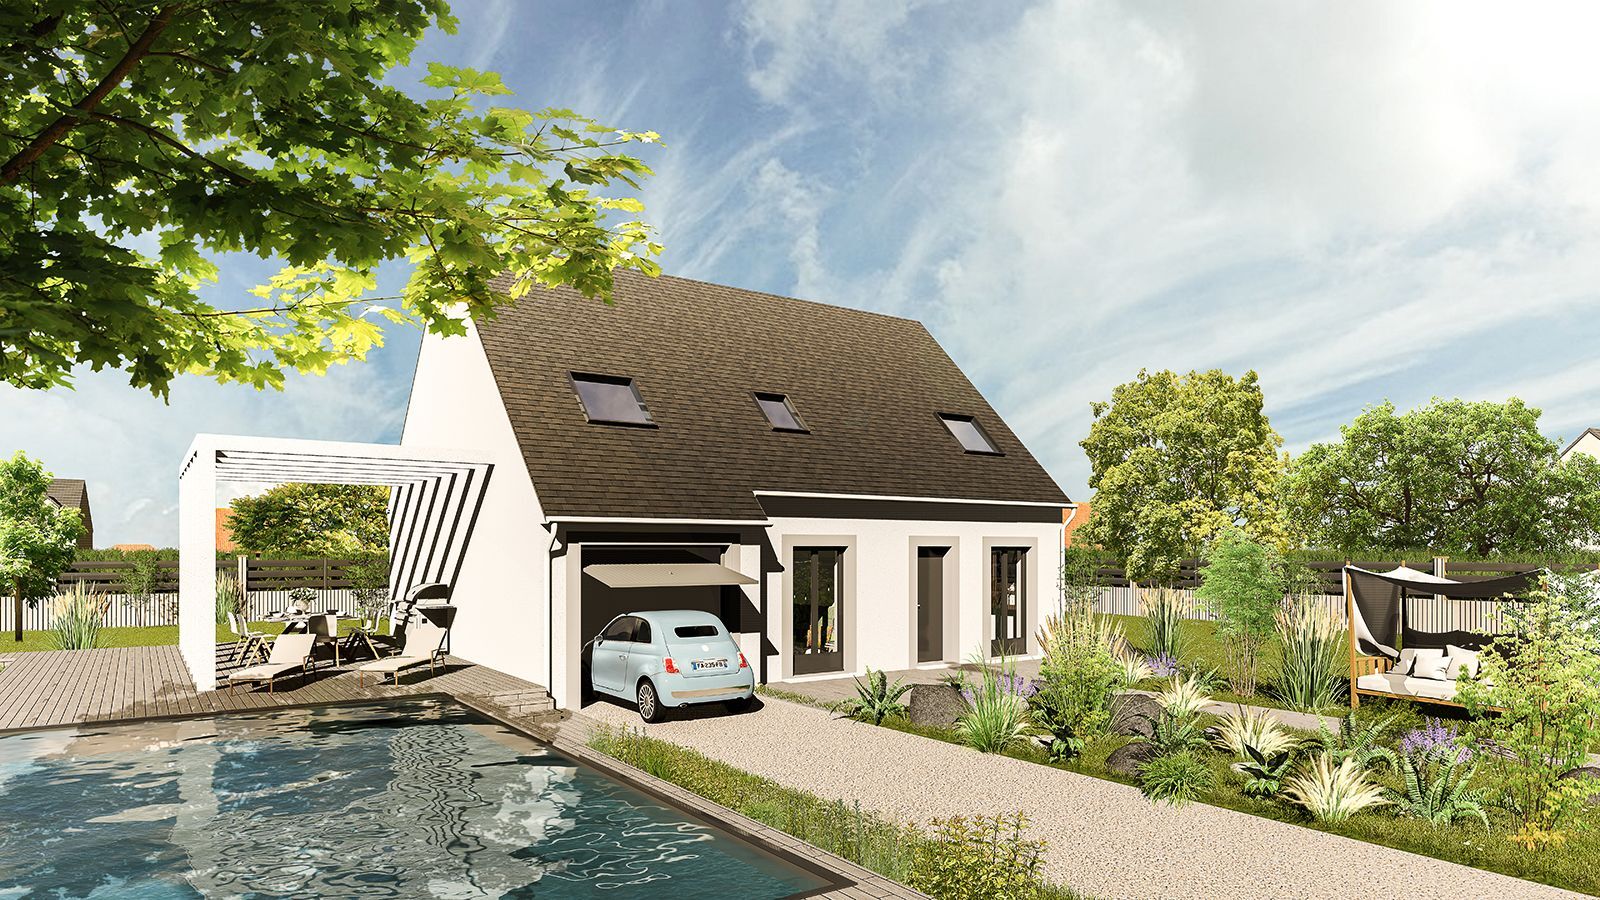 Vente Maison neuve 112 m² à La Croix-en-Brie 277 201 €